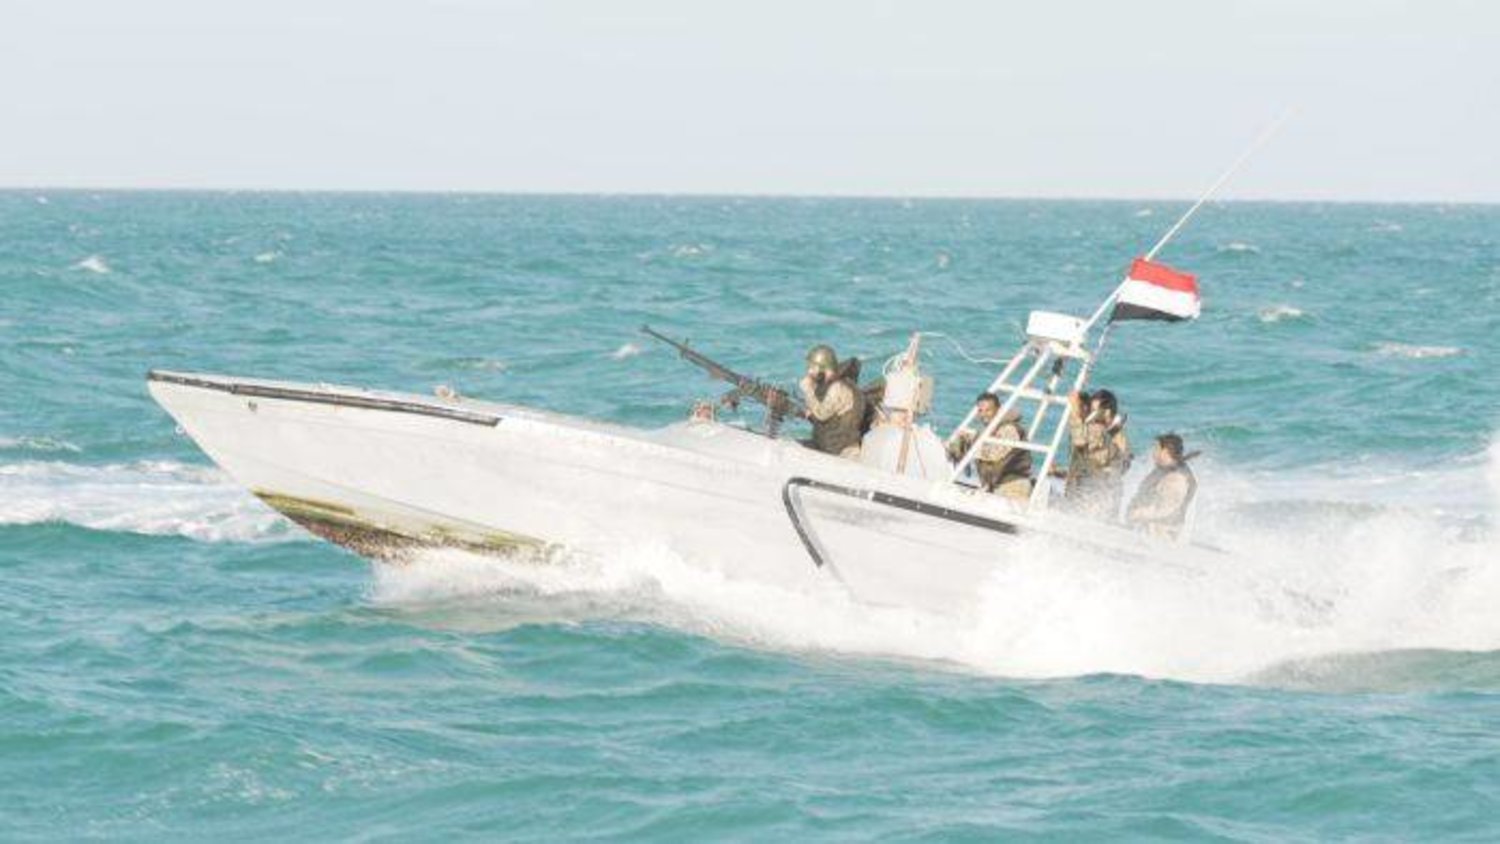 خفر سواحل قطاع البحر الأحمر ينقذ صيادين قبالة سواحل الخوخة